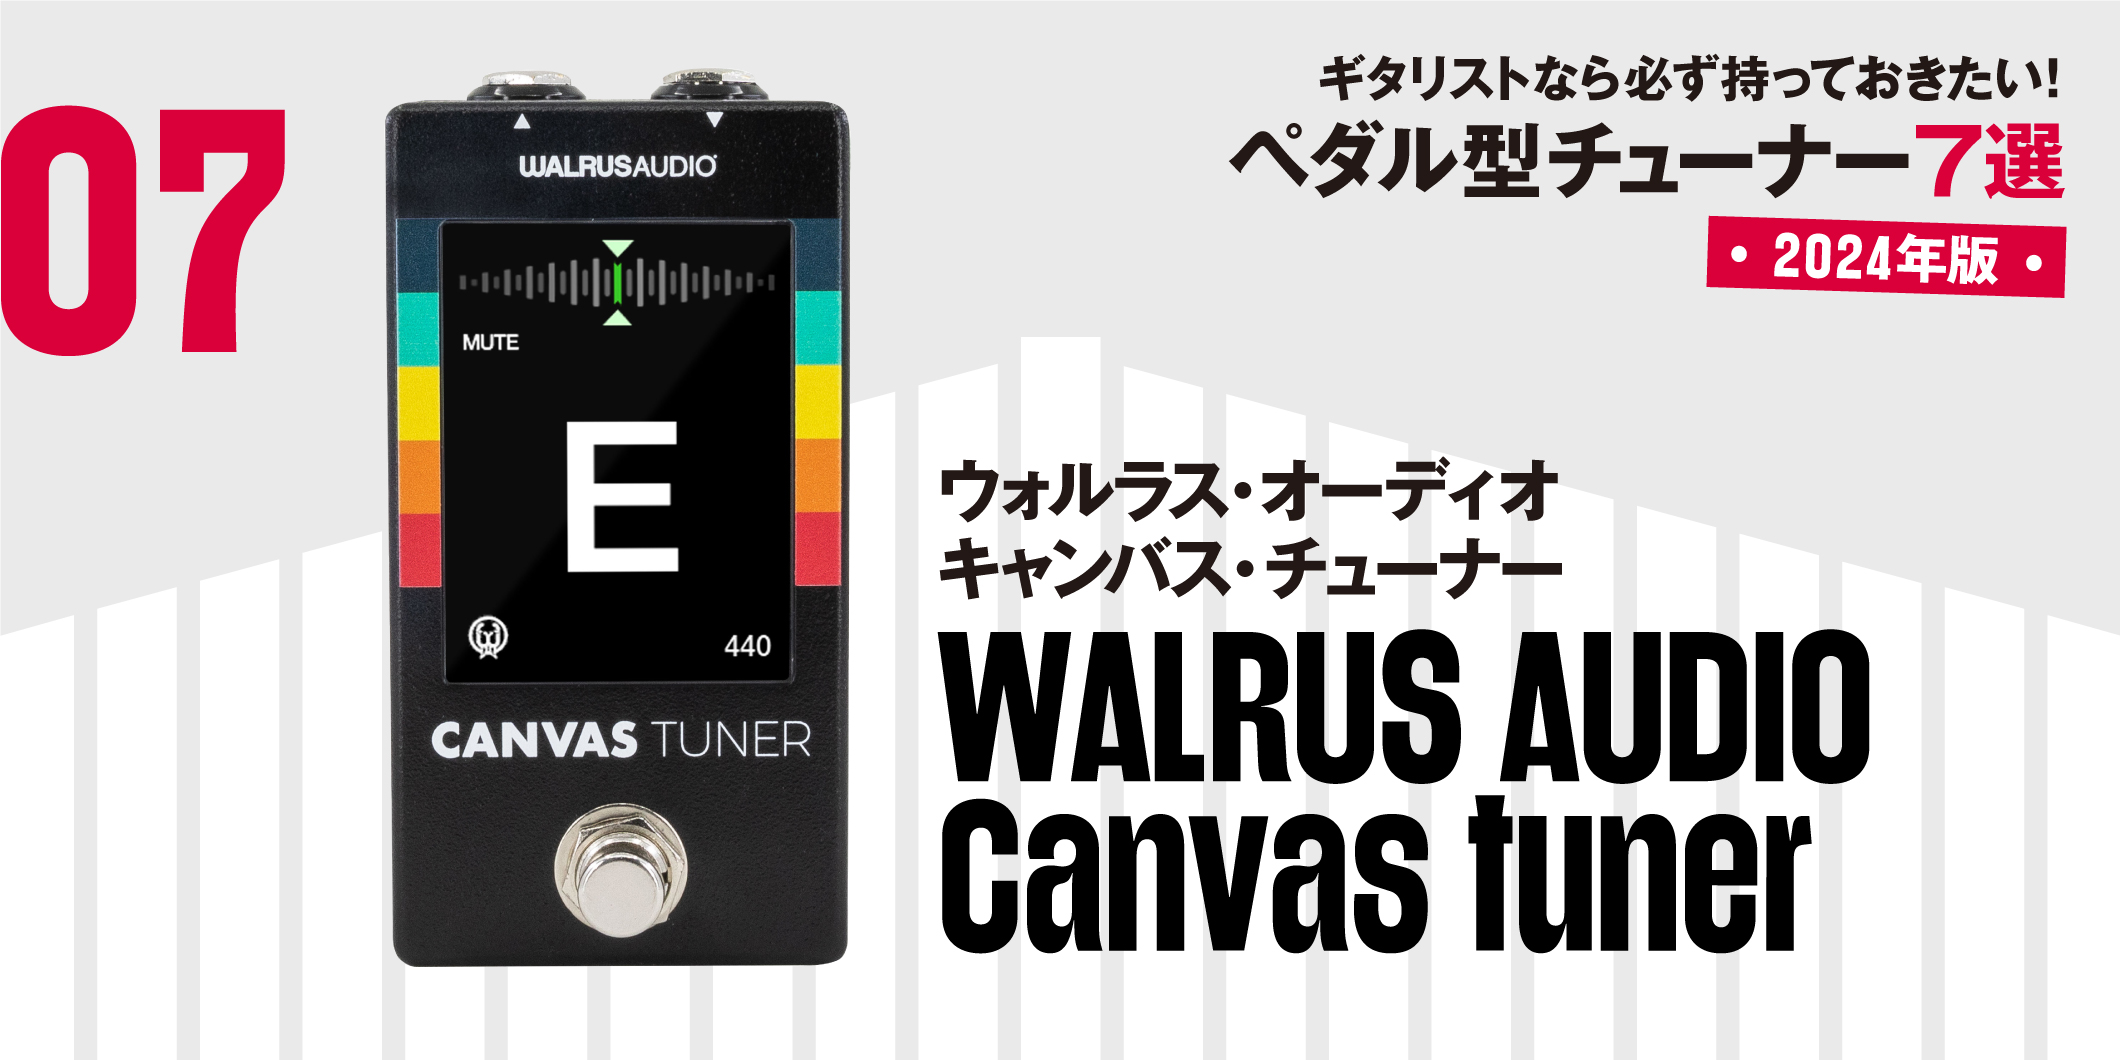 WALRUS AUDIO／Canvas tuner〜ギタリストなら必ず持っておきたい最新 